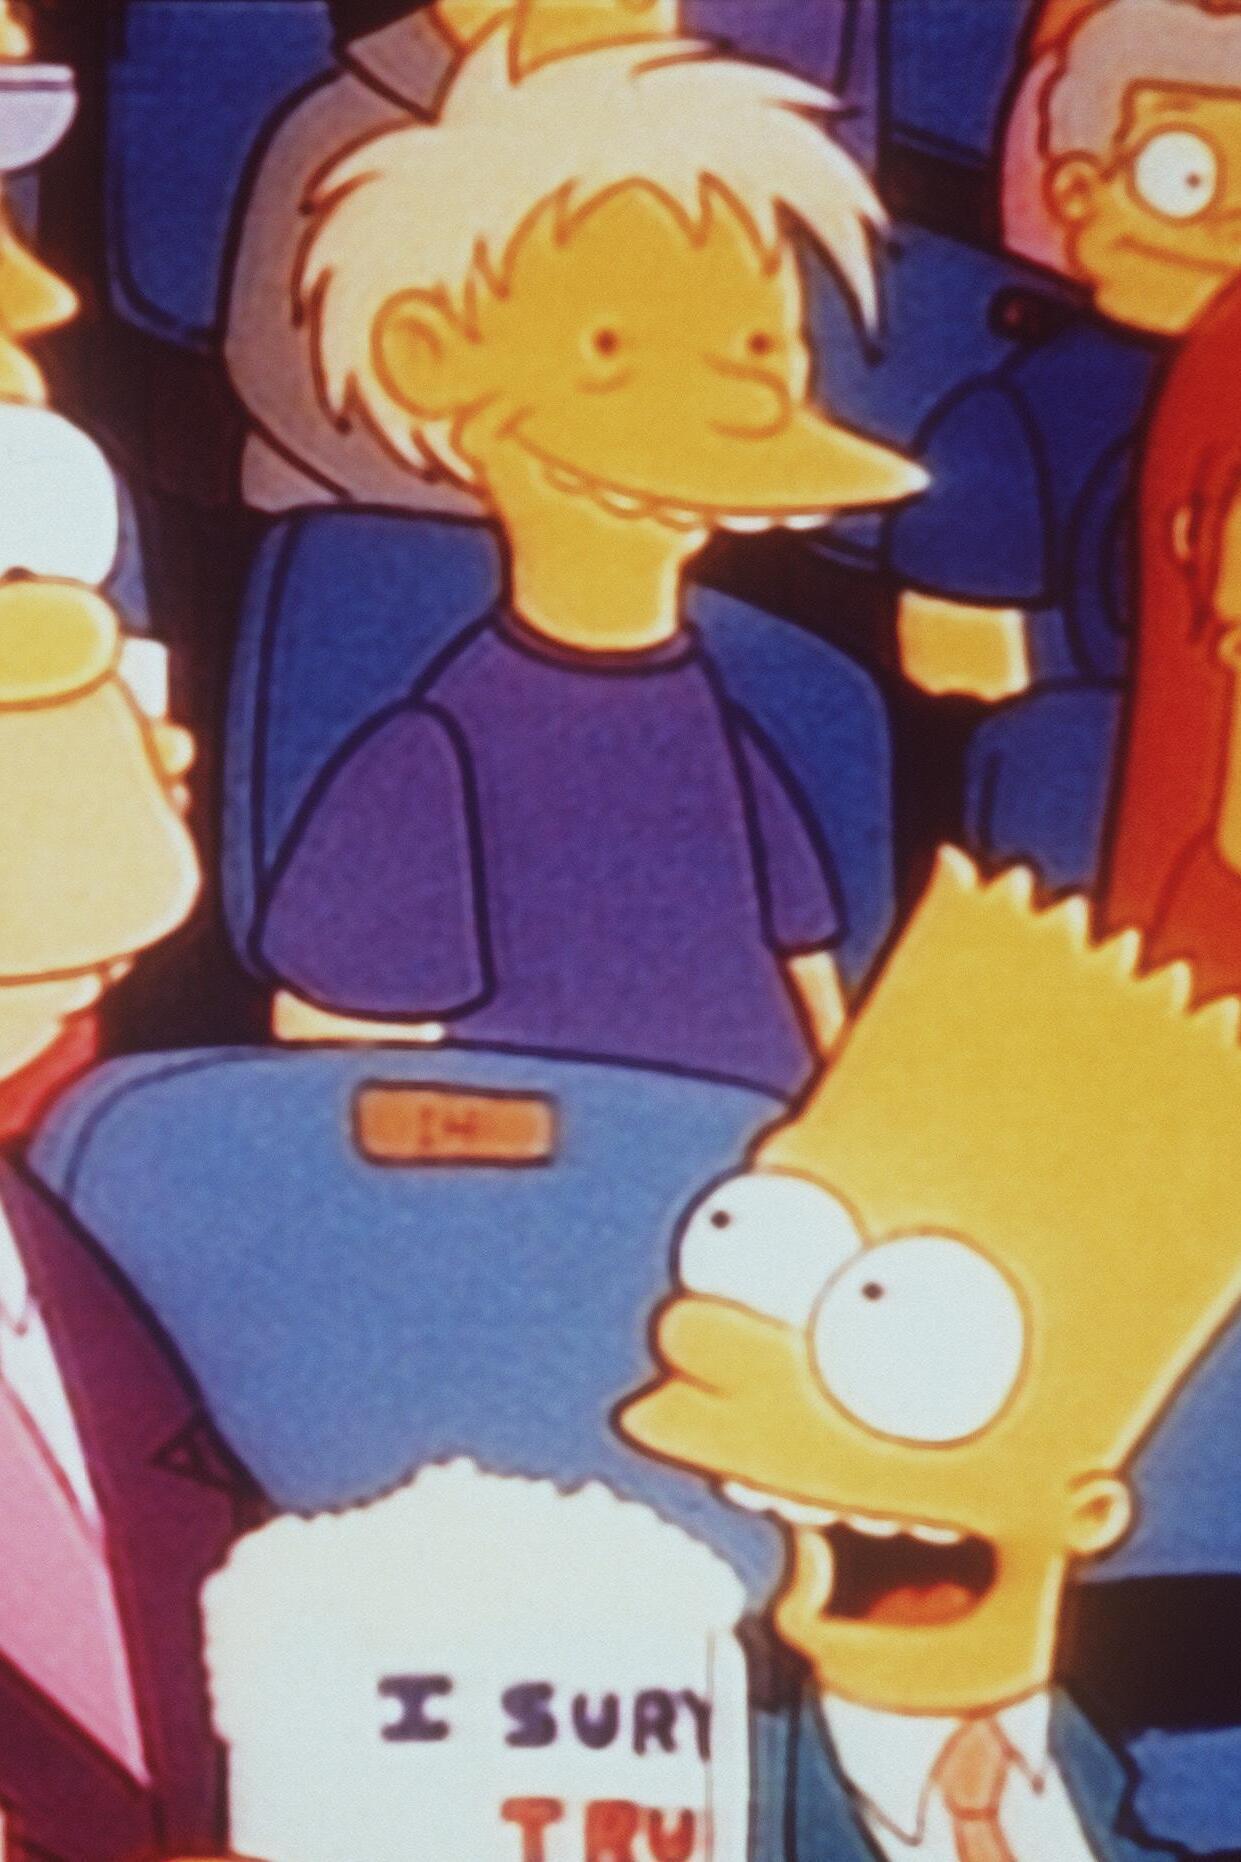 Les Simpson - Le saut de la mort